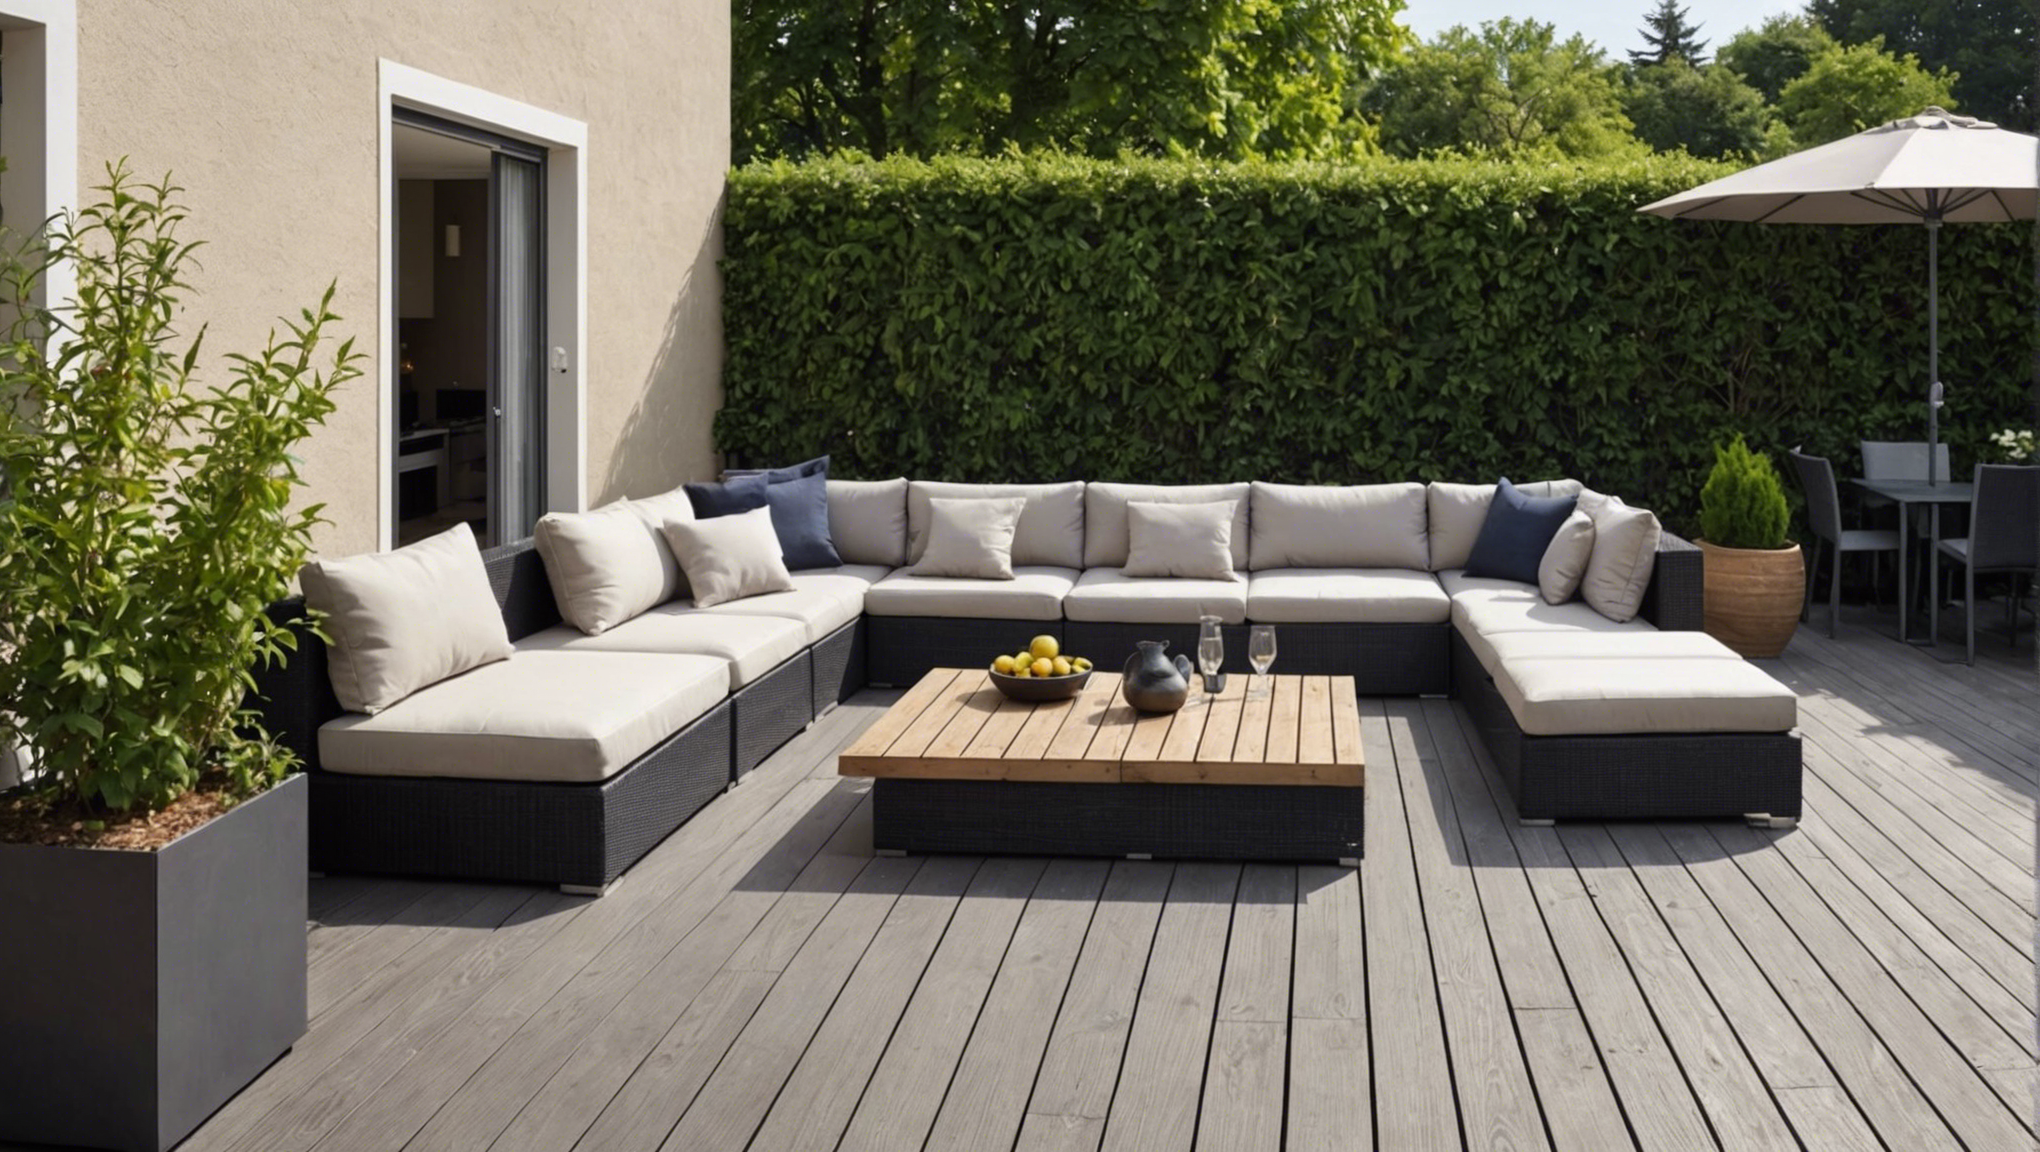 découvrez les matériaux nobles qui sublimeront votre terrasse et apporteront une touche d'élégance à votre espace extérieur.